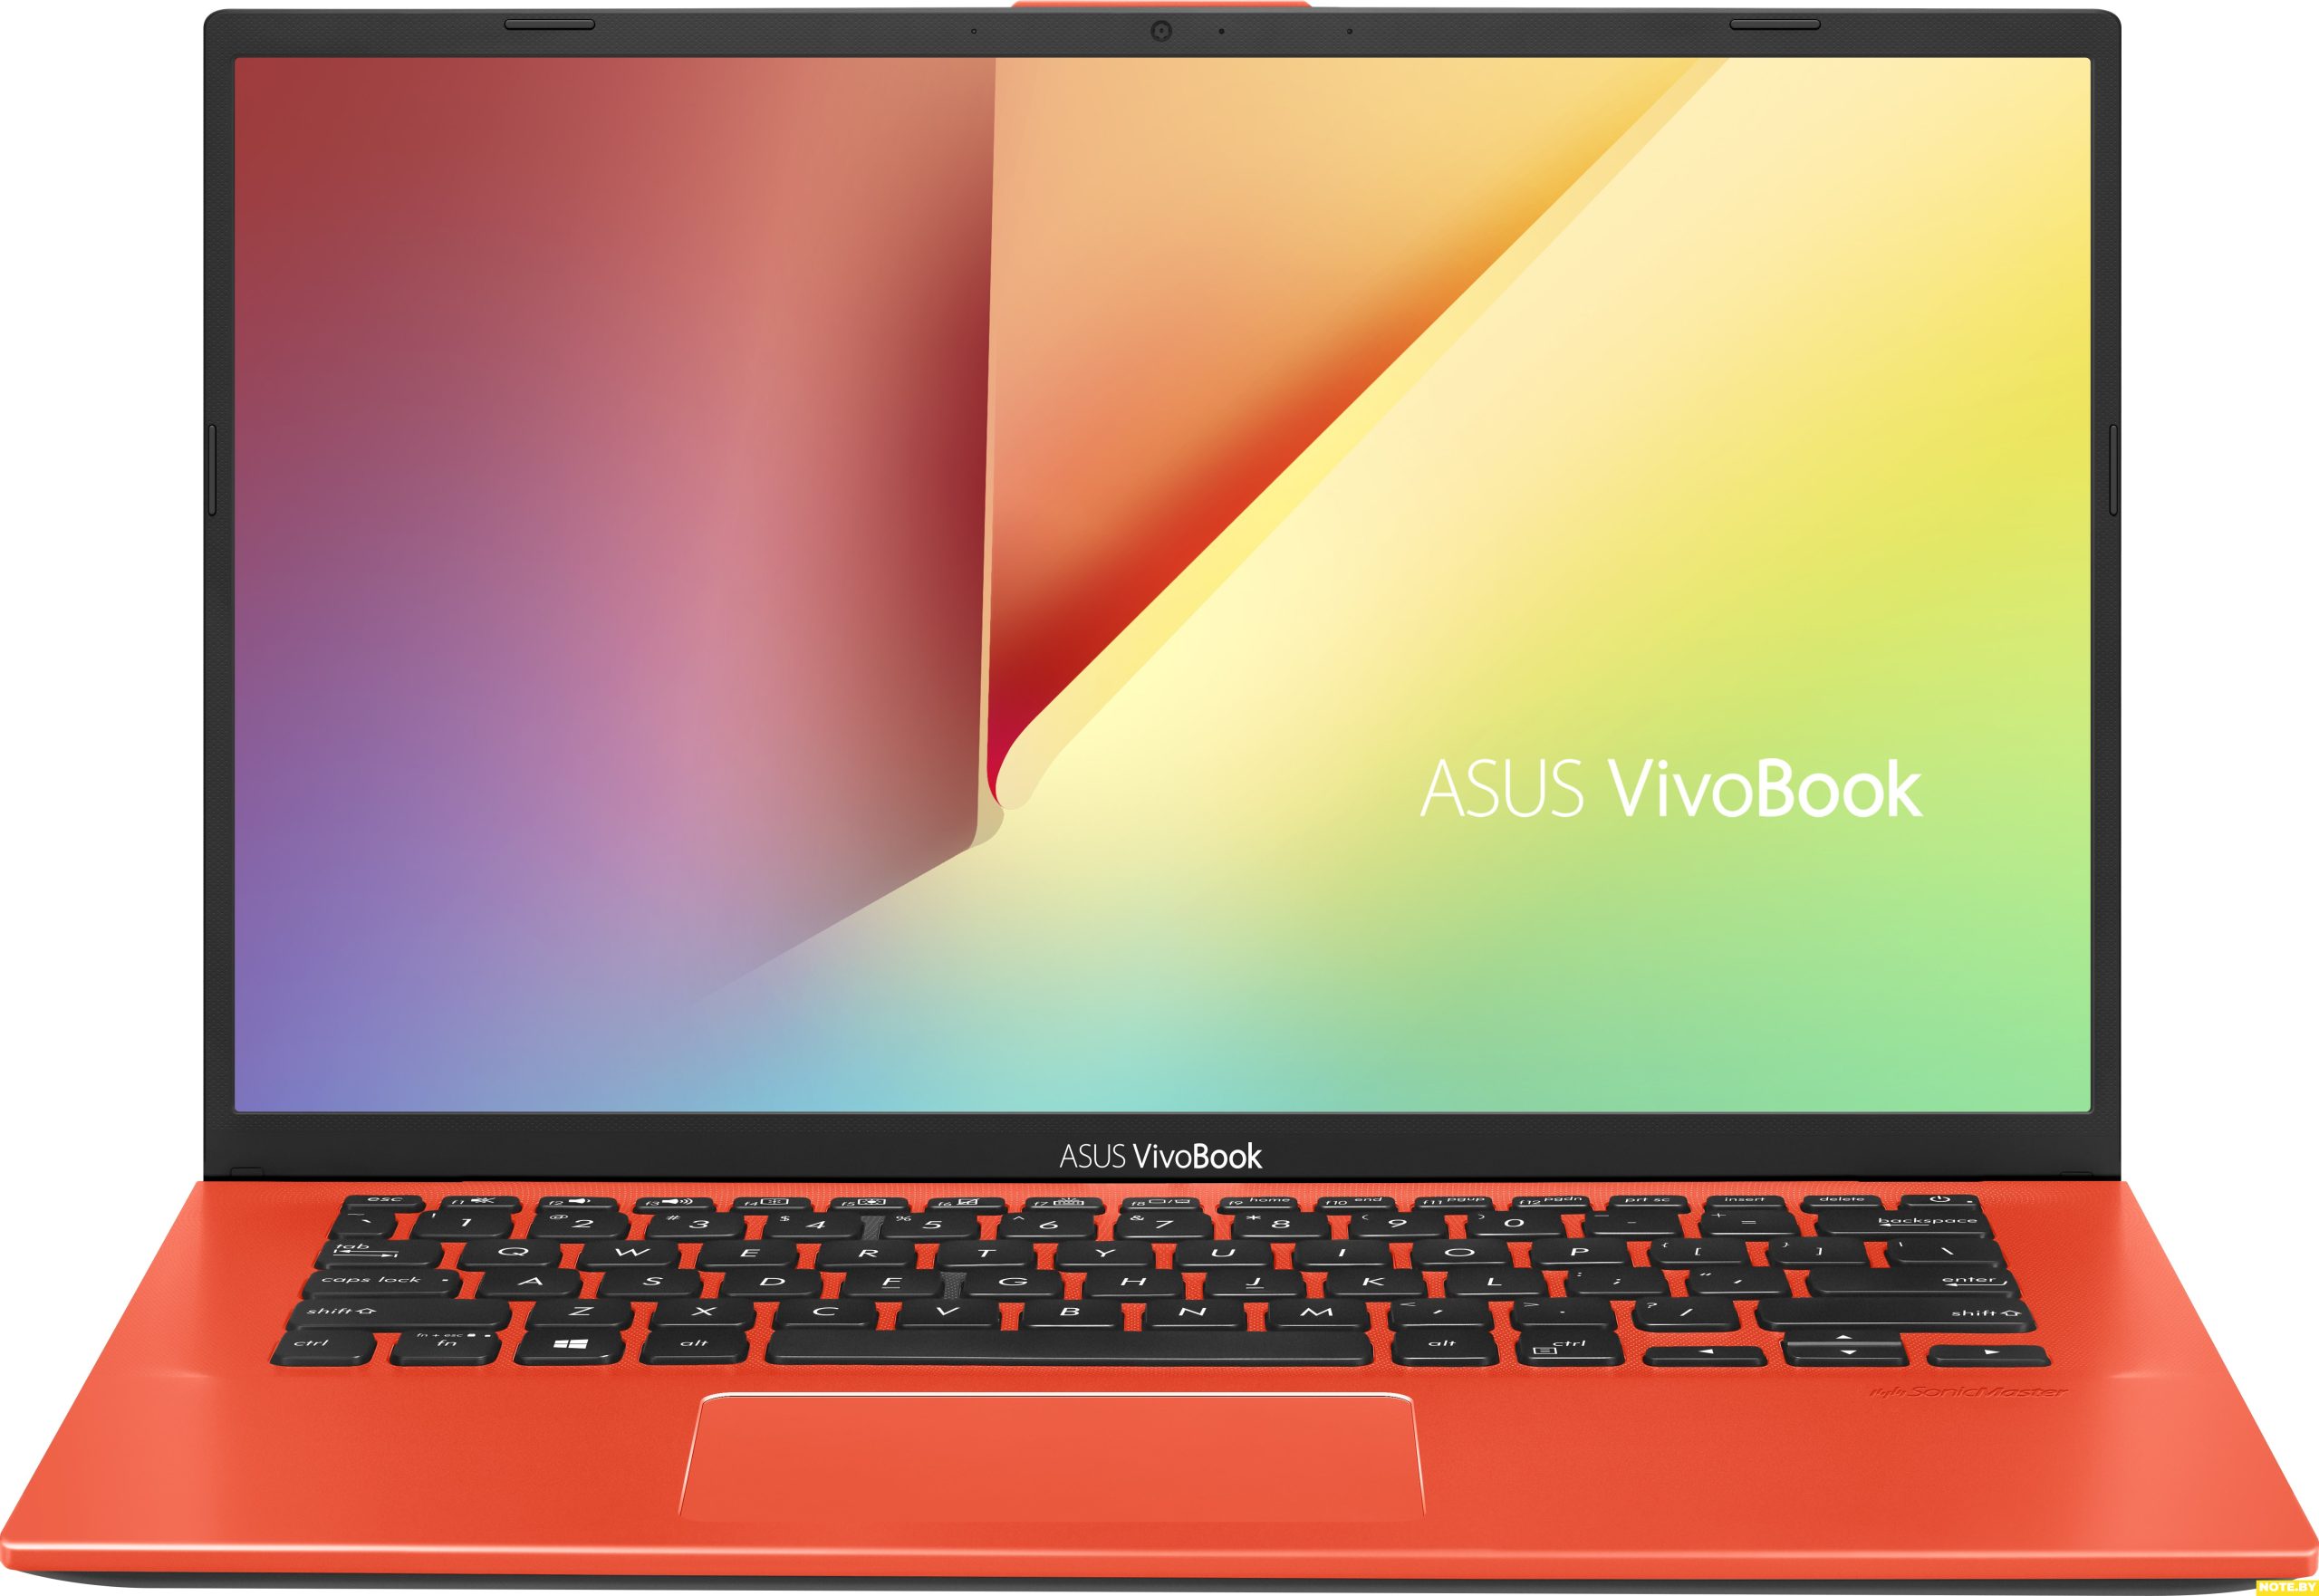 Ноутбук ASUS VivoBook 14 X412FA-EB719T